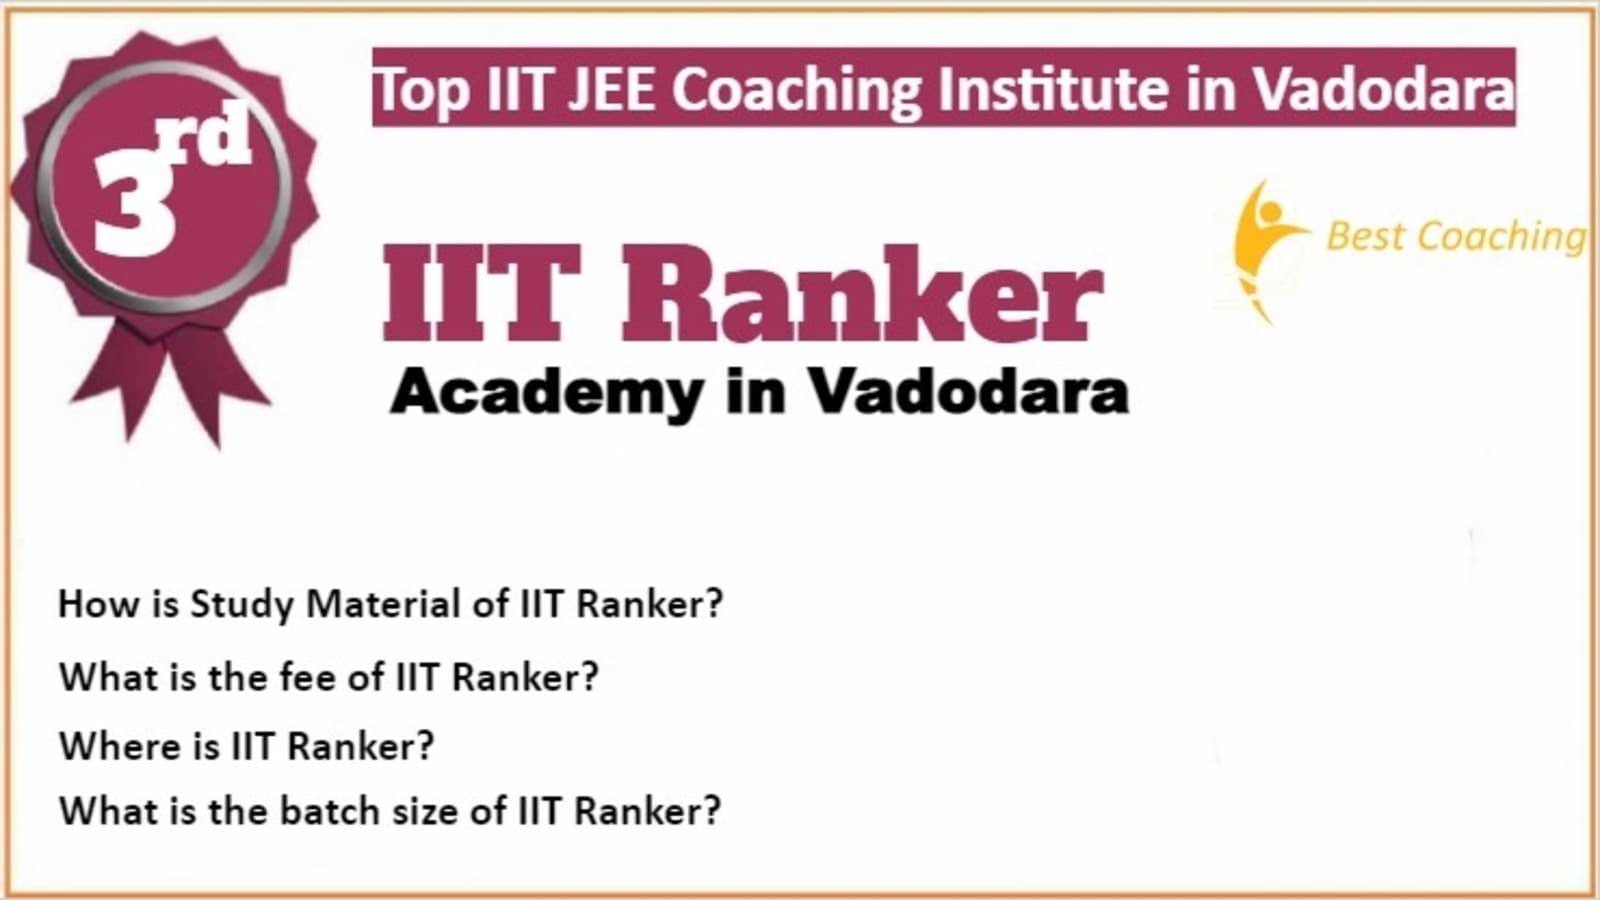 Rank 3 Best IIT JEE Coaching in Vadodara